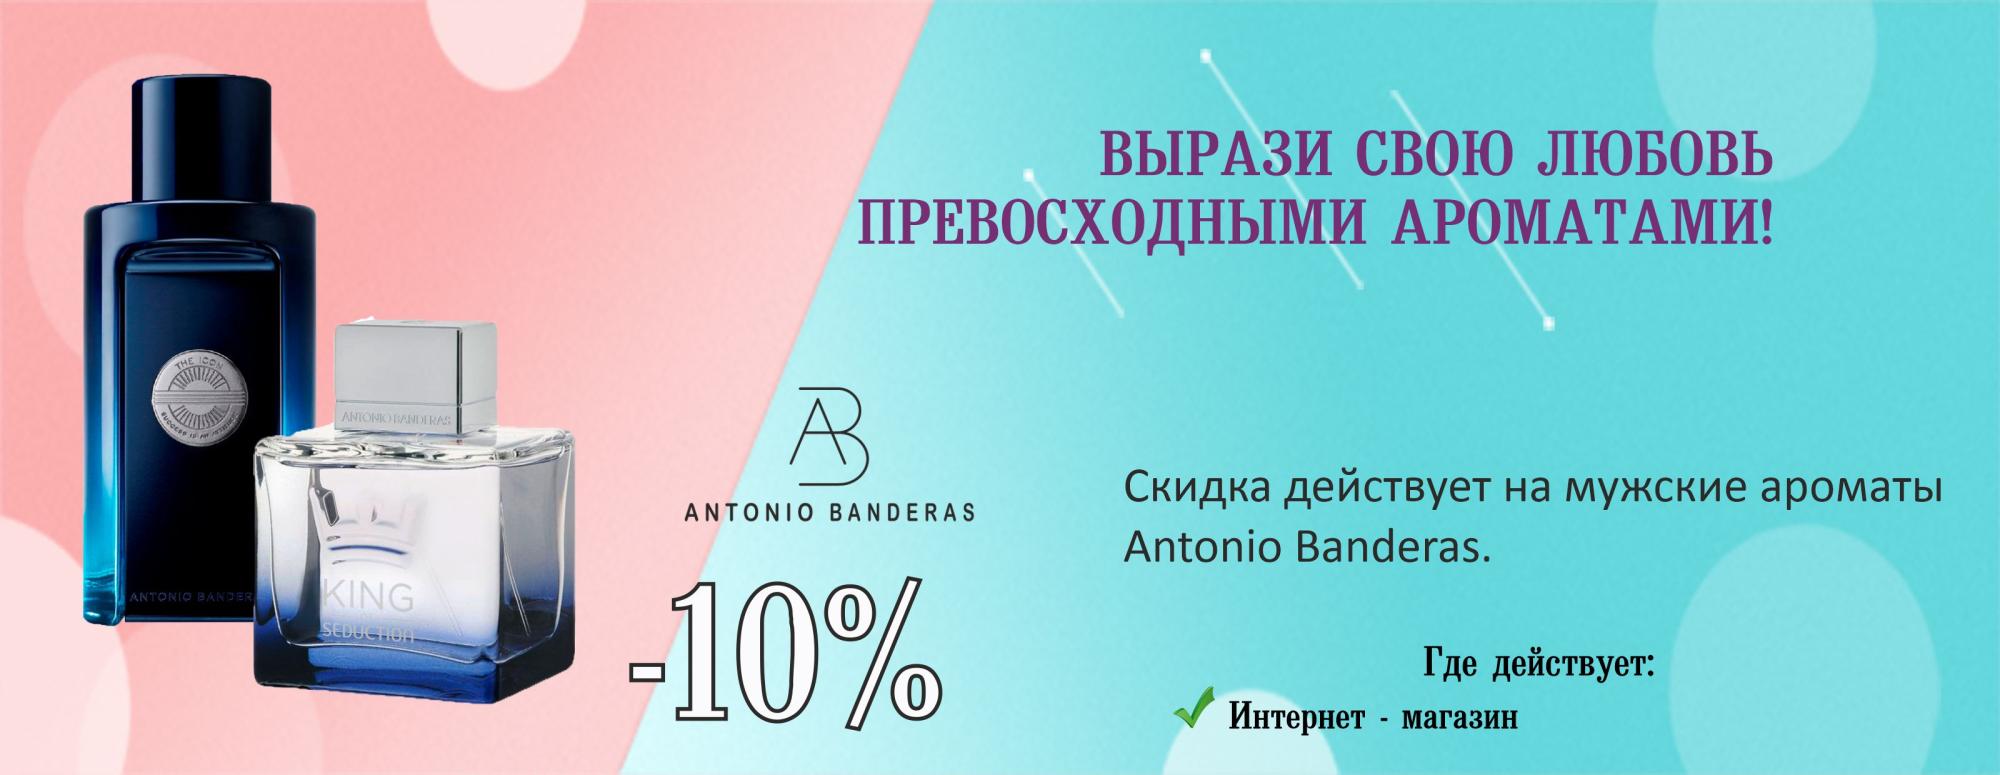 Antonio Banderas -10%!